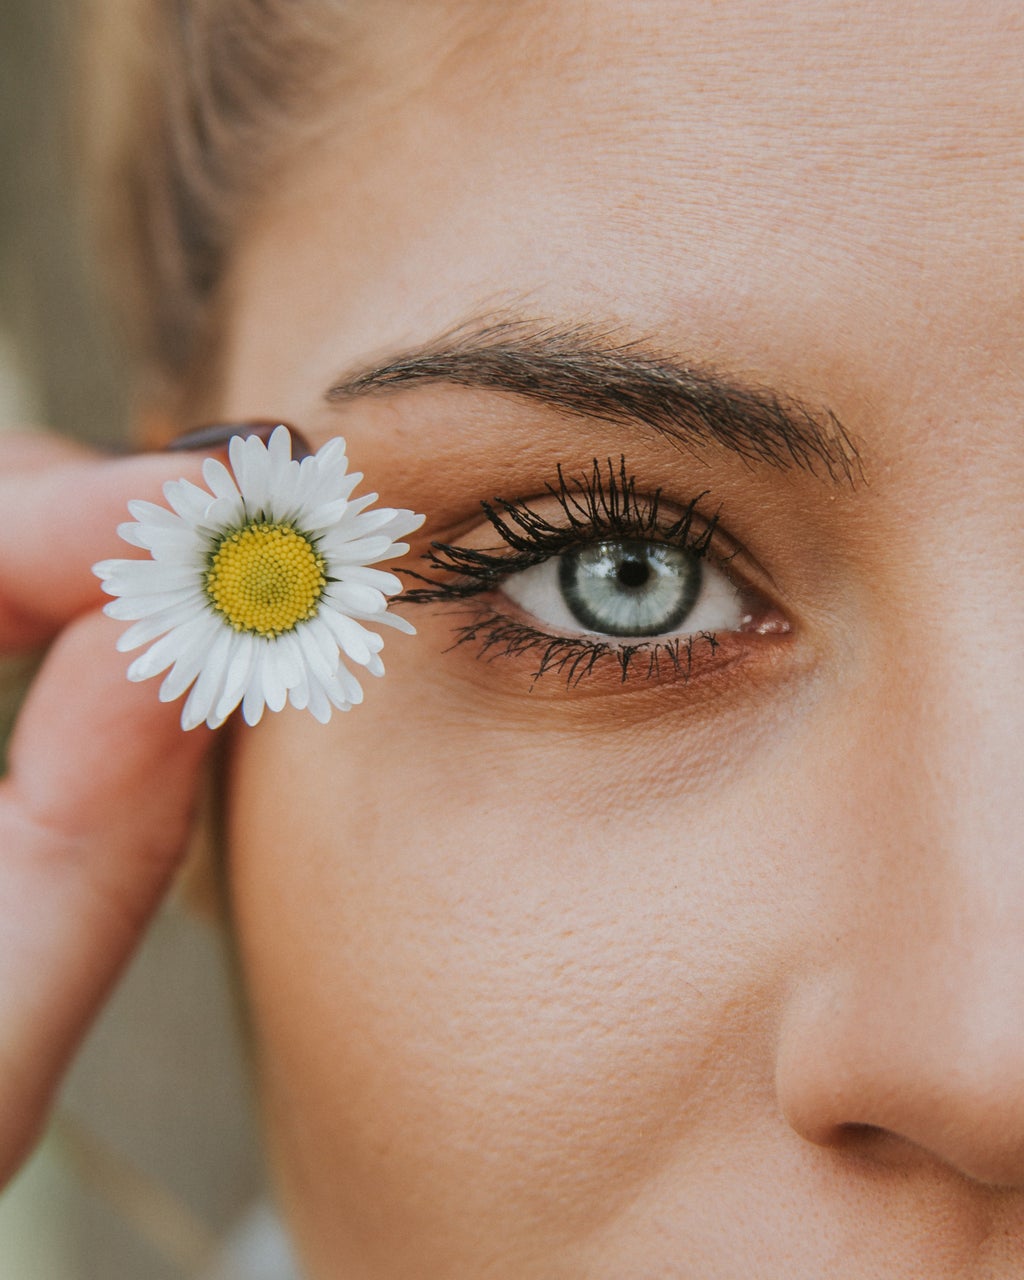 eye with a flower beside it